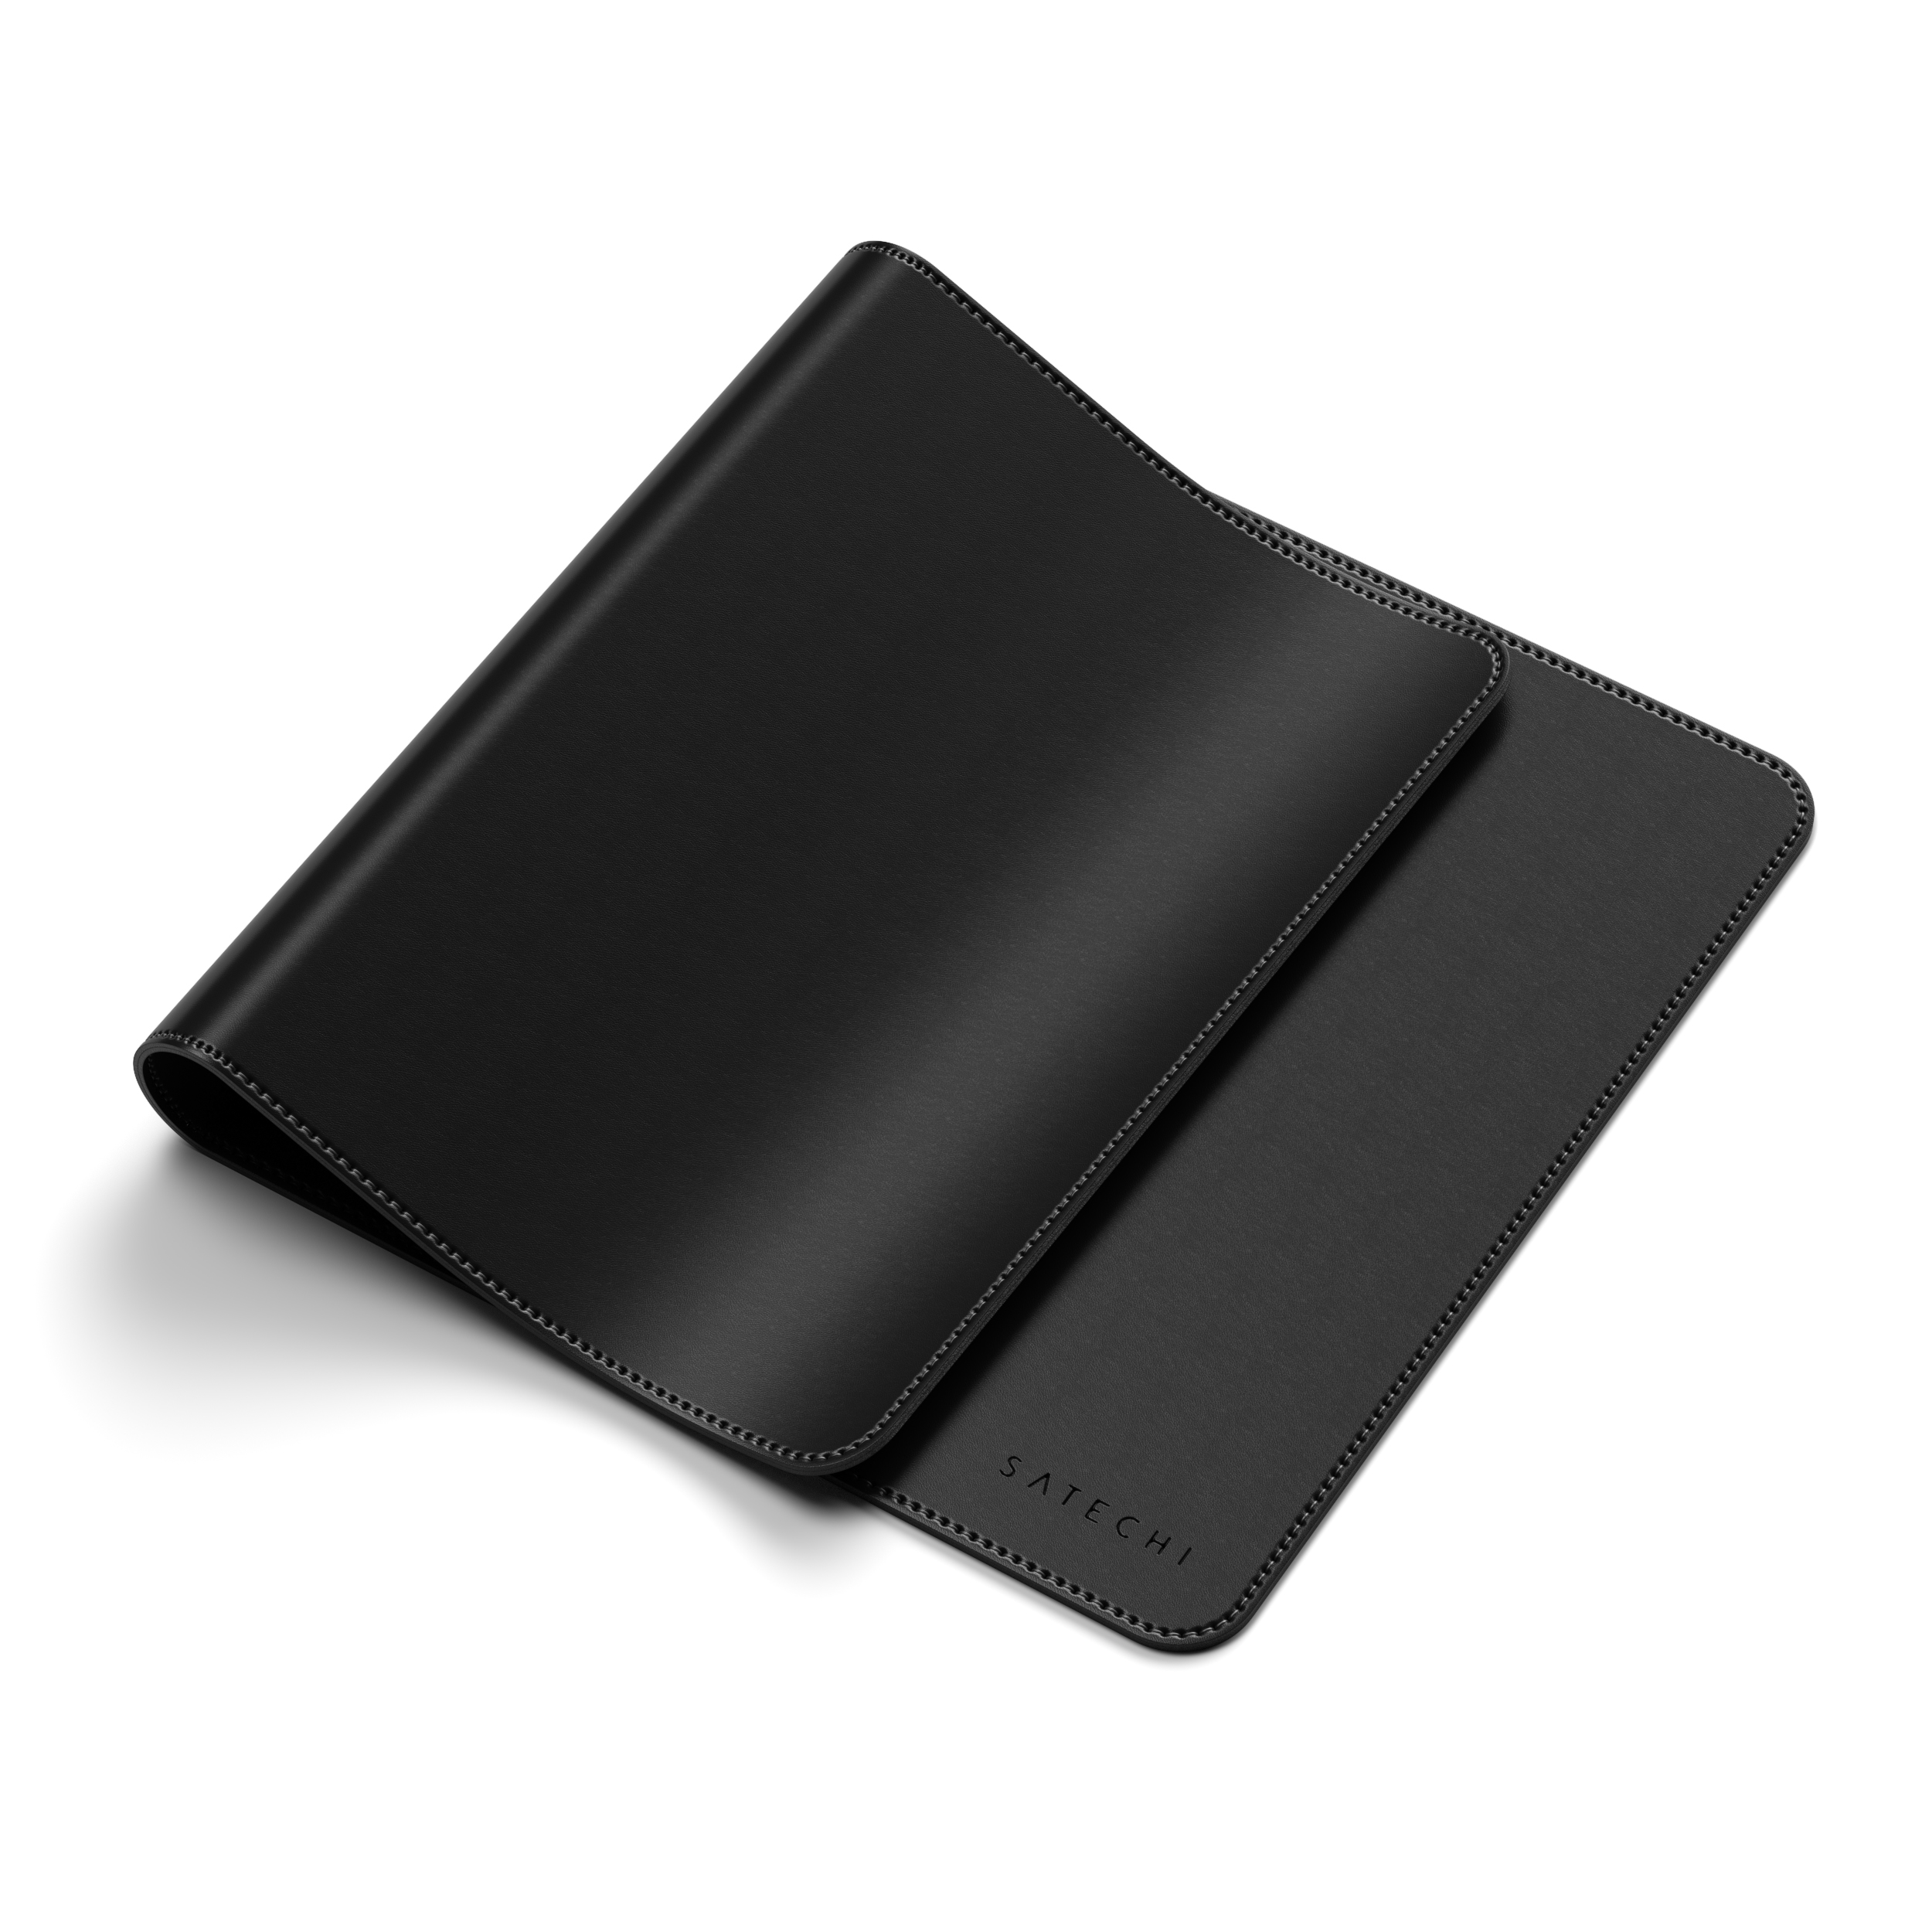 Black cm) 58,42 (31 Deskmate cm Eco-Leather Mousepad - SATECHI x